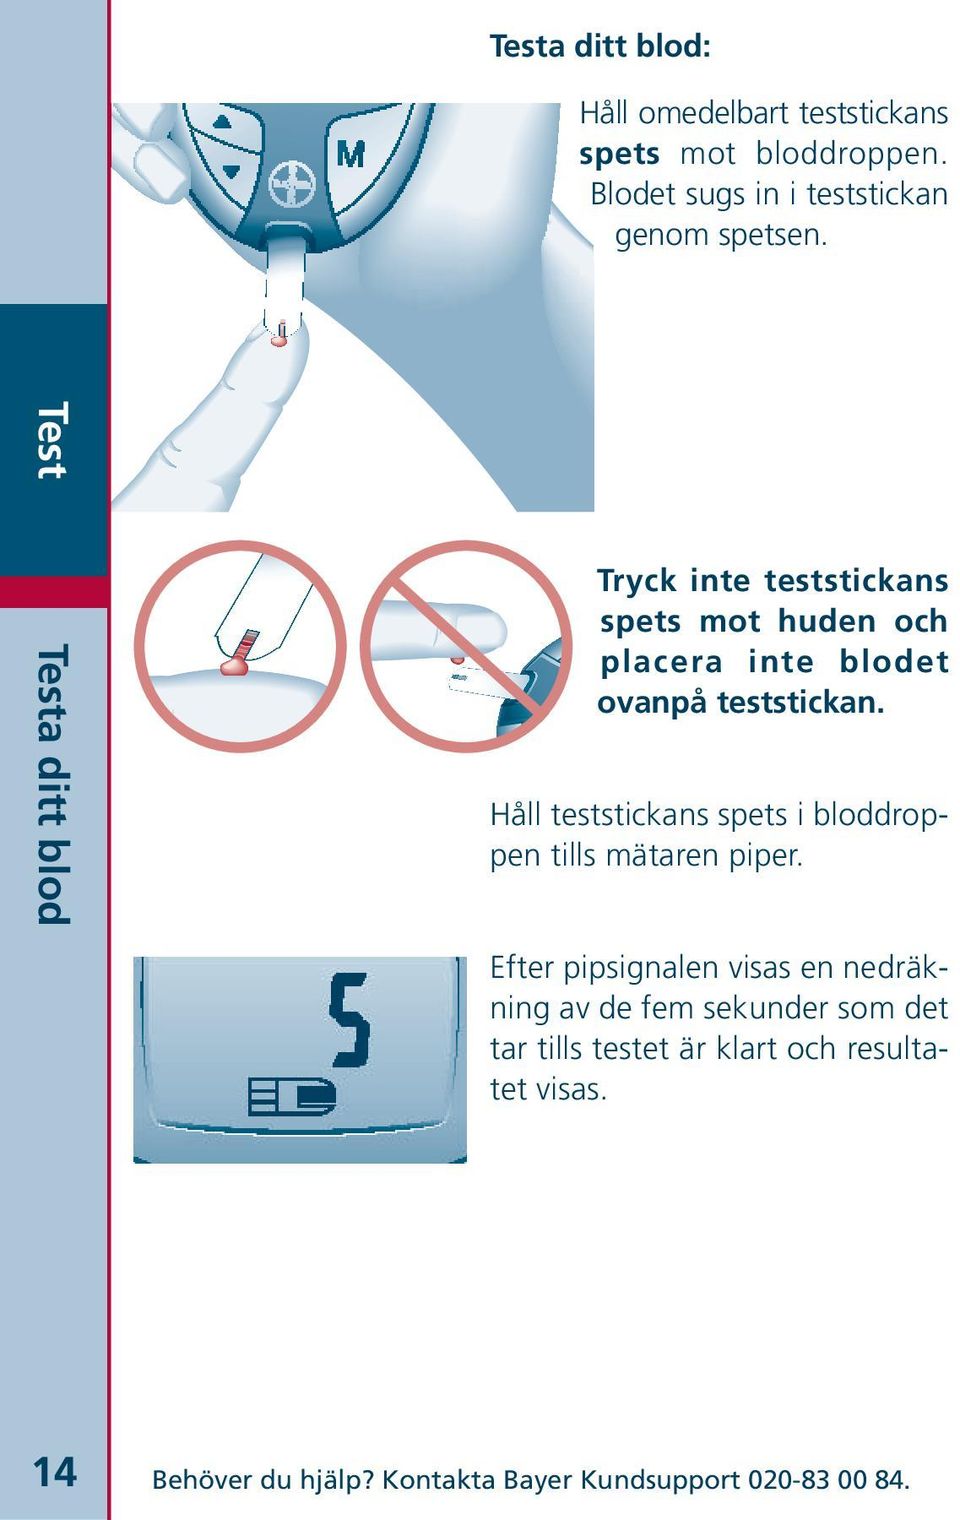 Håll teststickans spets i bloddroppen tills mätaren piper.